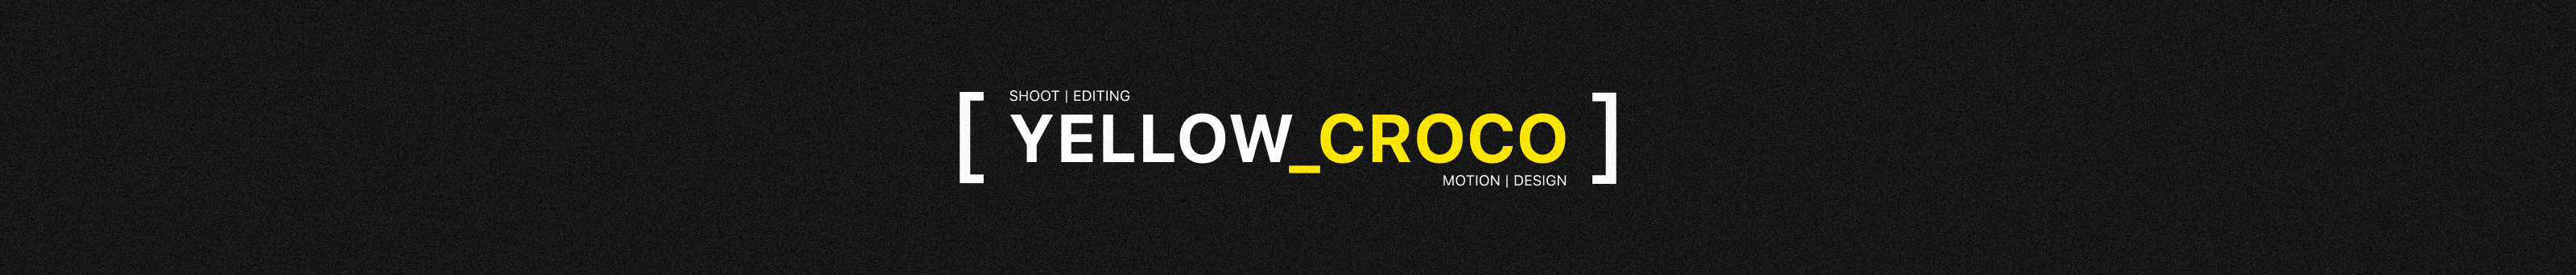 YELLOW CROCO profil başlığı